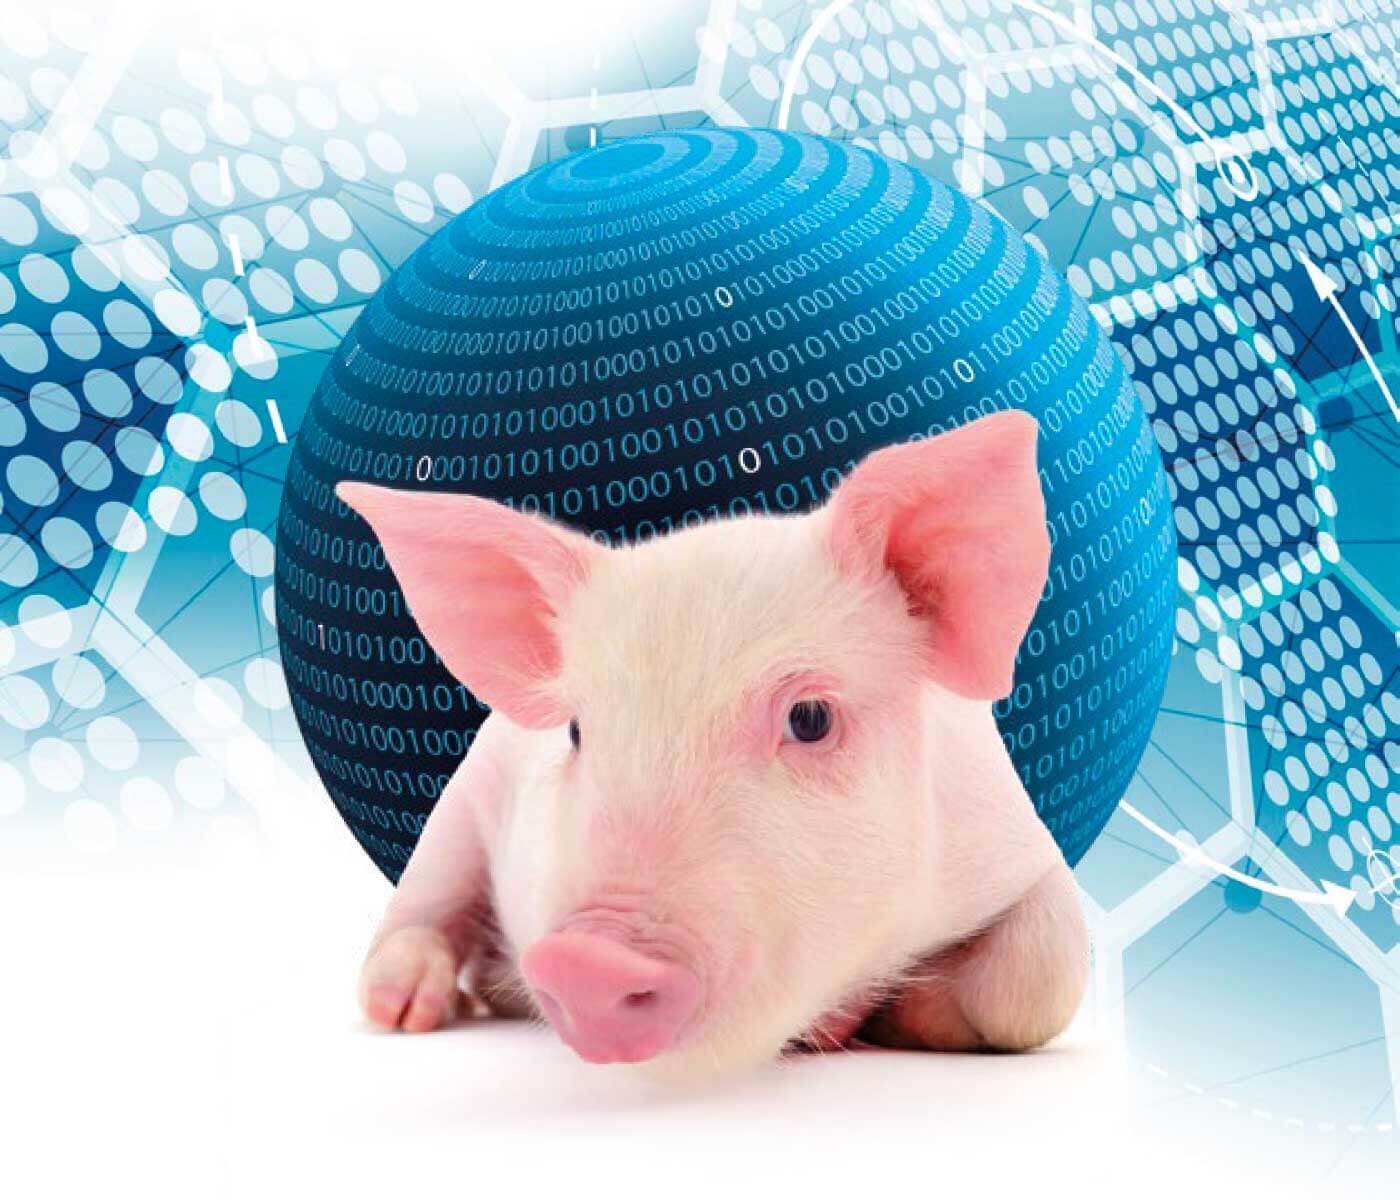 La transformación digital del sector porcino ya ha llegado